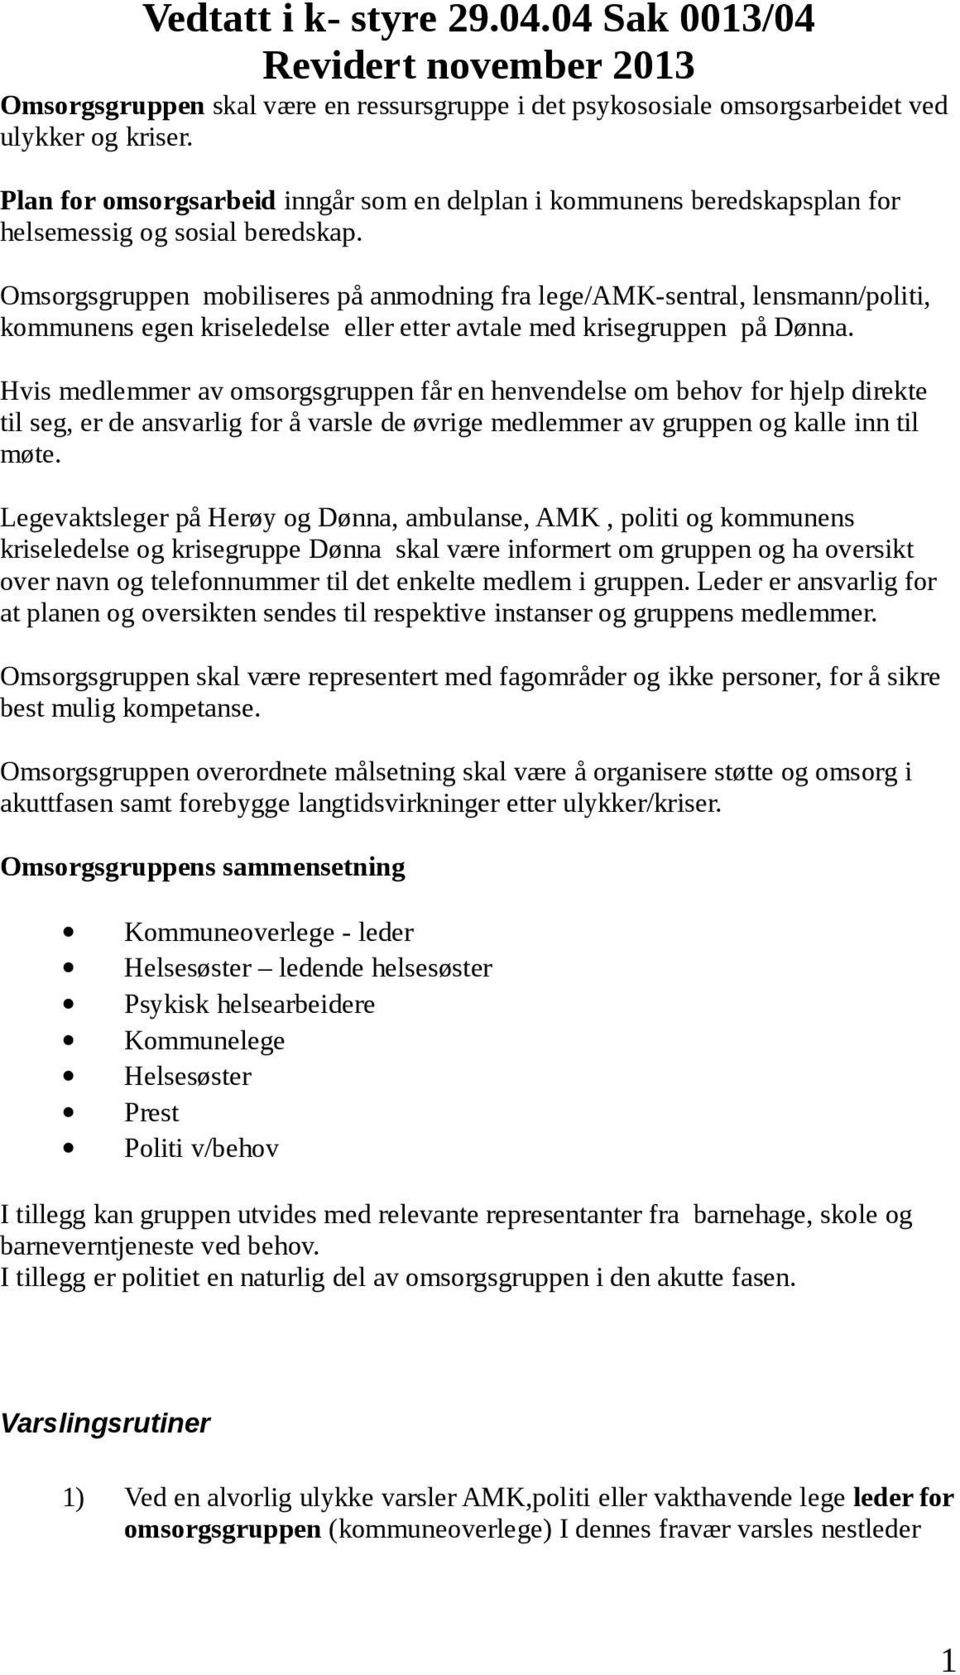 Omsorgsgruppen mobiliseres på anmodning fra lege/amk-sentral, lensmann/politi, kommunens egen kriseledelse eller etter avtale med krisegruppen på Dønna.